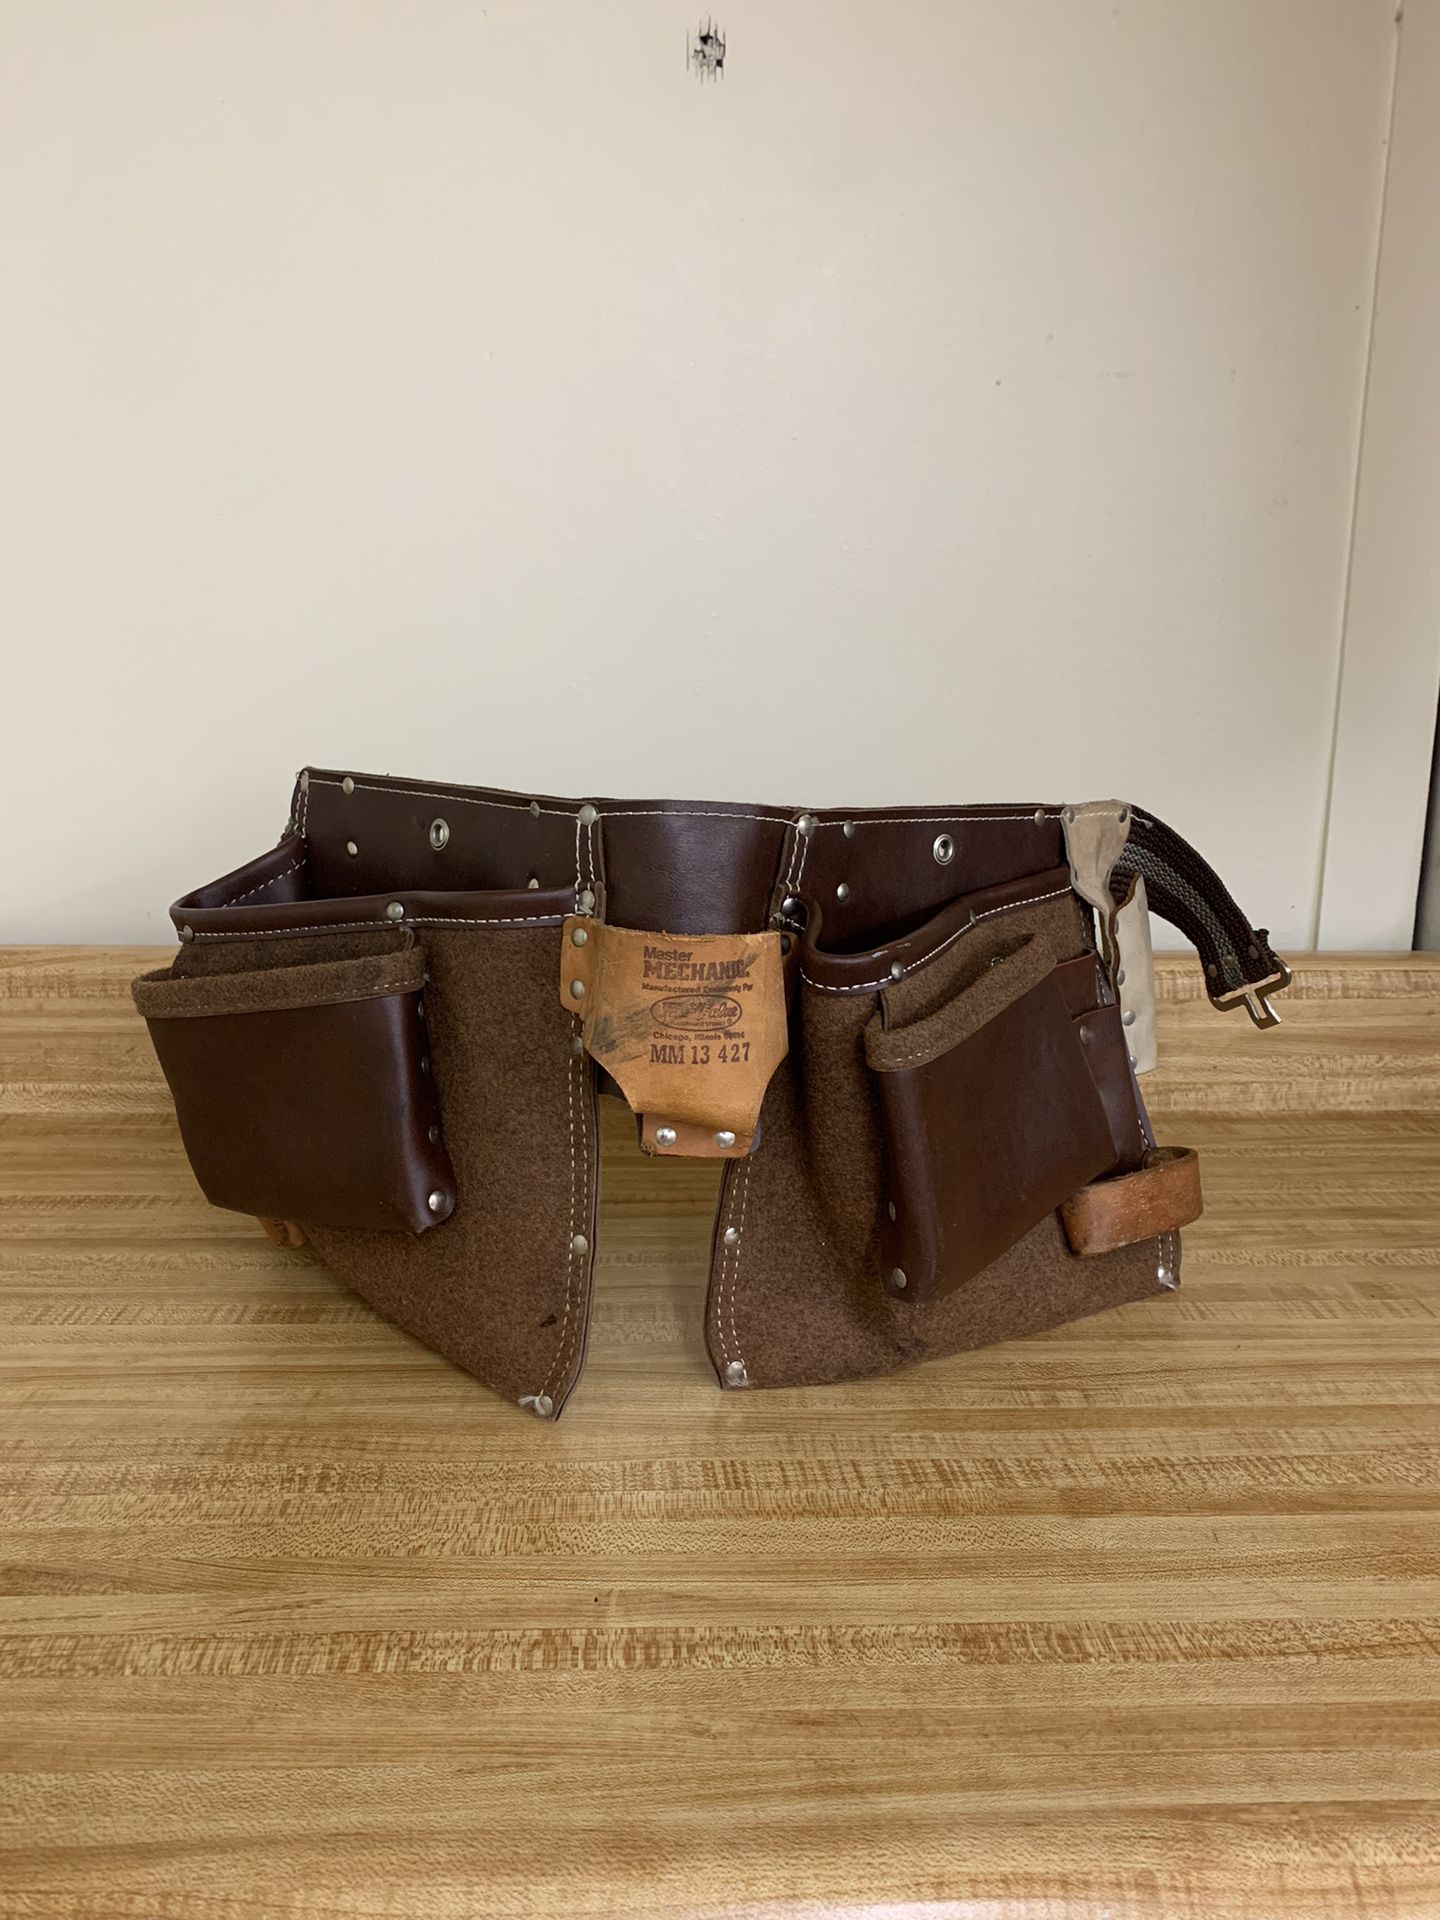 Framing Tool Belt Set 5087 - Occidental Leather